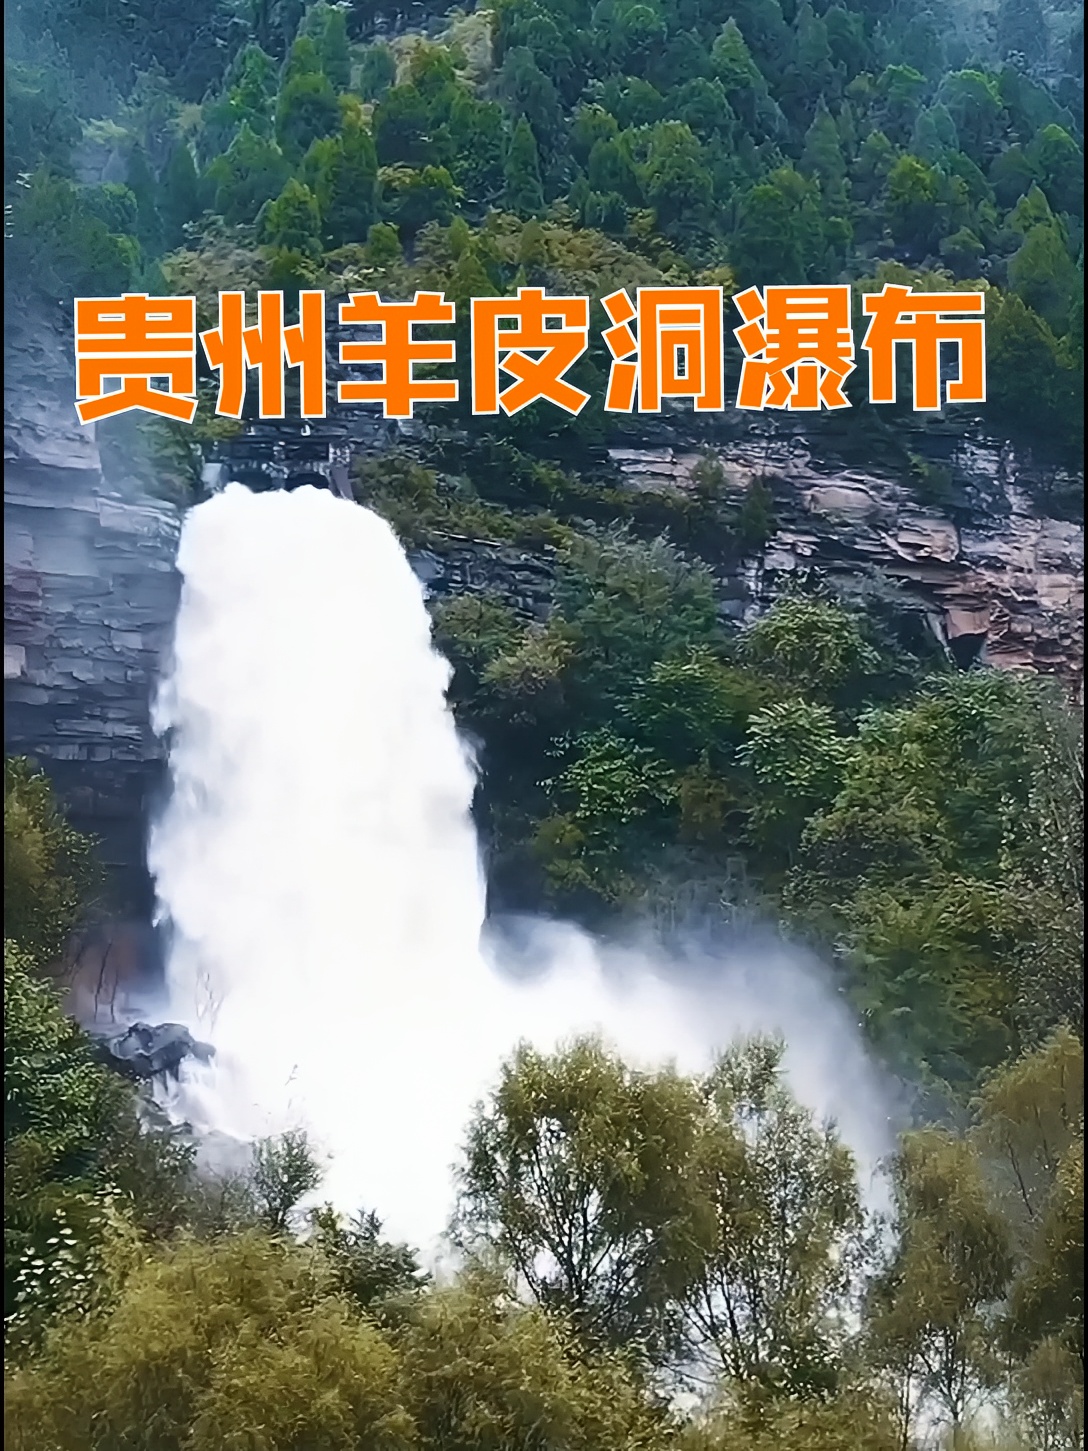 探秘贵州秘境，羊皮洞瀑布飞流直下，壮观非凡。#羊皮洞瀑布 #贵州旅游 #自驾游贵州 #心动的贵州